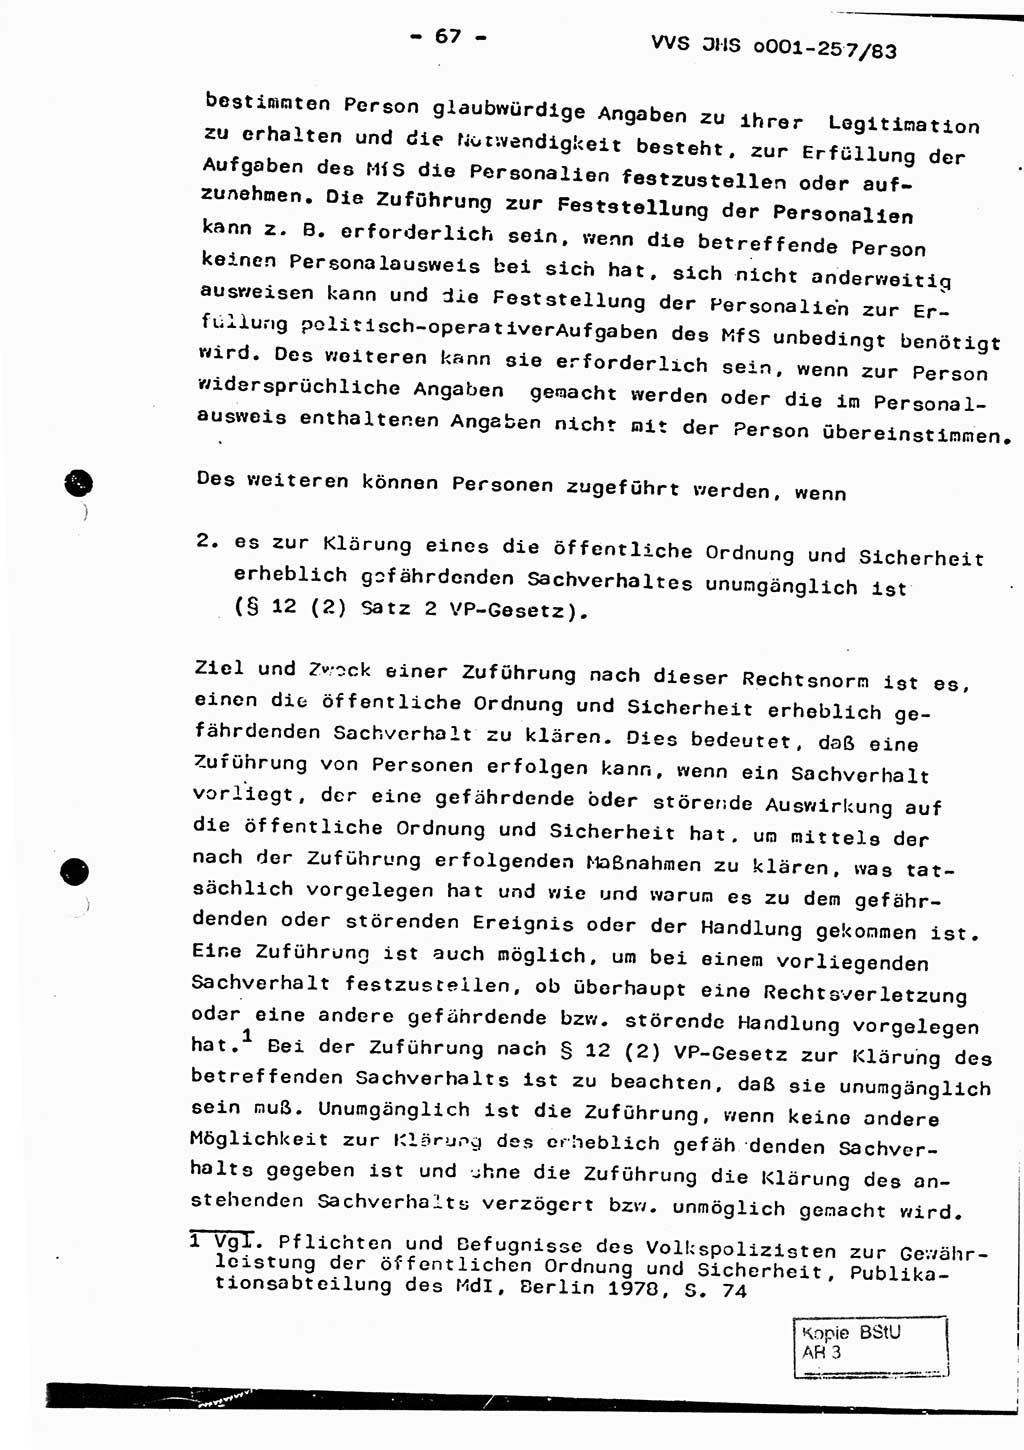 Dissertation, Oberst Helmut Lubas (BV Mdg.), Oberstleutnant Manfred Eschberger (HA IX), Oberleutnant Hans-Jürgen Ludwig (JHS), Ministerium für Staatssicherheit (MfS) [Deutsche Demokratische Republik (DDR)], Juristische Hochschule (JHS), Vertrauliche Verschlußsache (VVS) o001-257/83, Potsdam 1983, Seite 67 (Diss. MfS DDR JHS VVS o001-257/83 1983, S. 67)